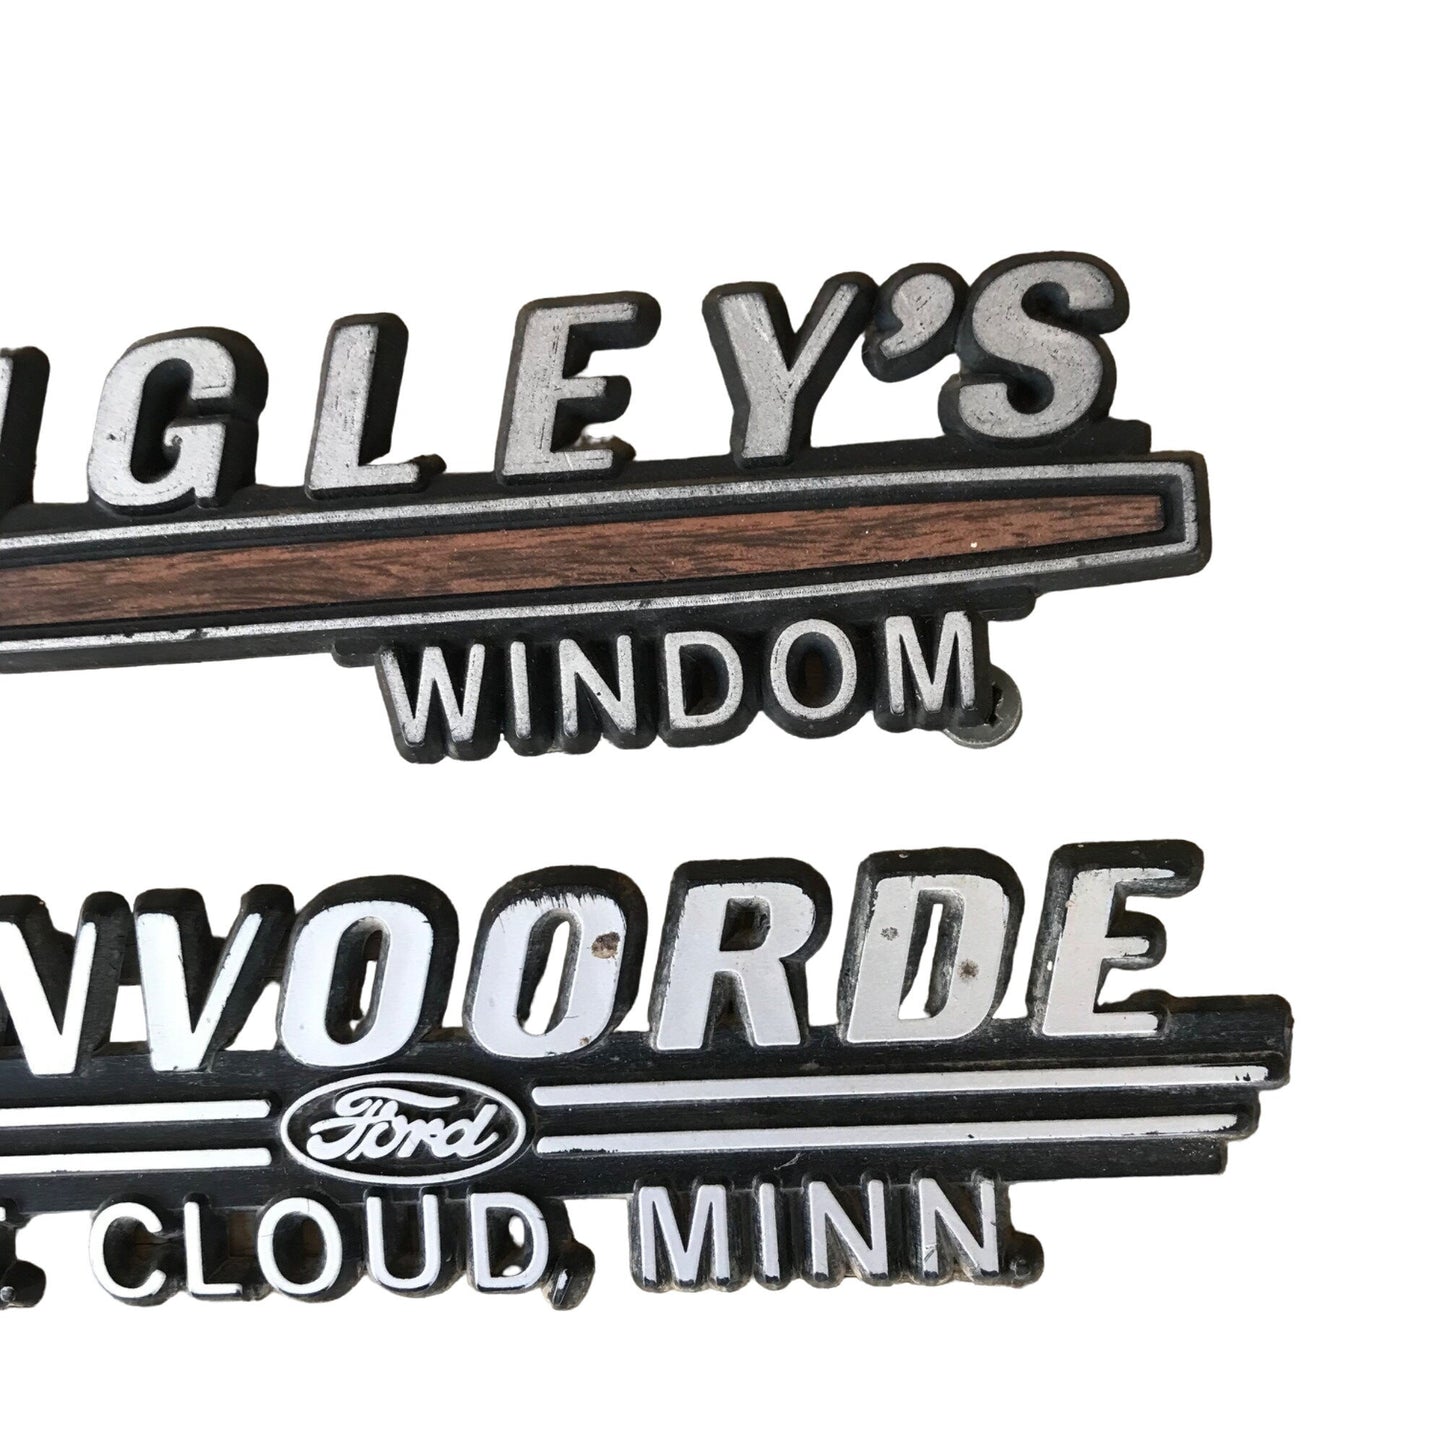 Lot 2 Vintage MN Dealership Emblems Tenvoorde Ford St Cloud & Higley’s Windom